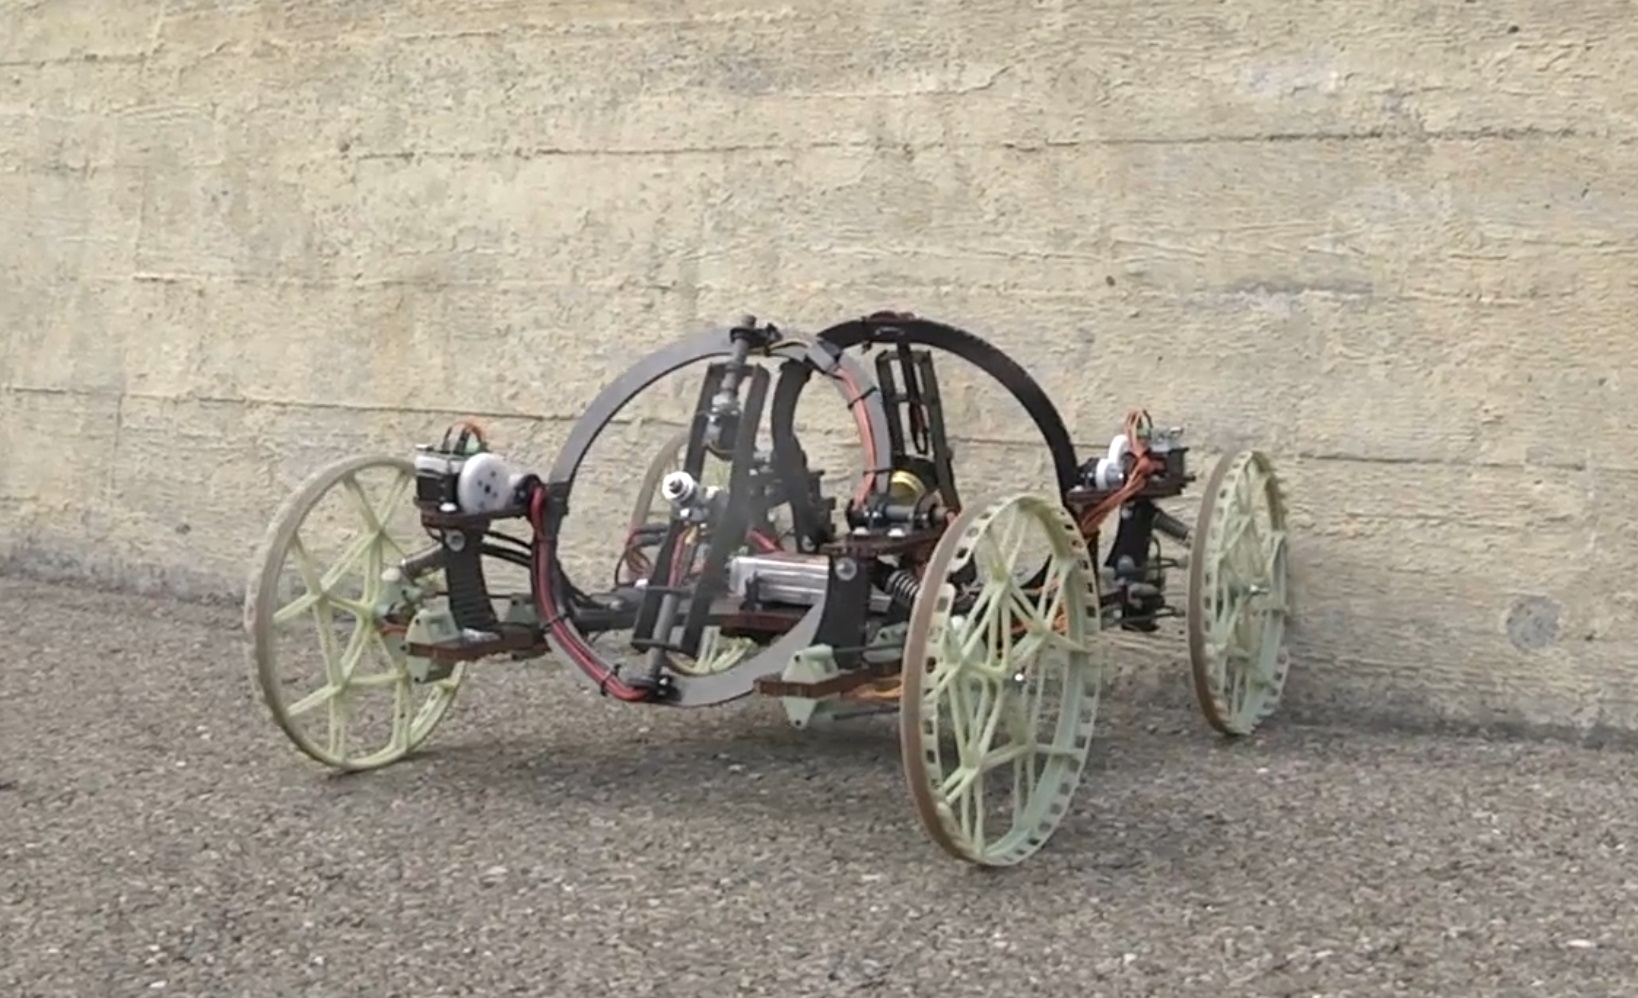 VertiGo, a wall-climbing robot, has a carbon fiber breastplate.